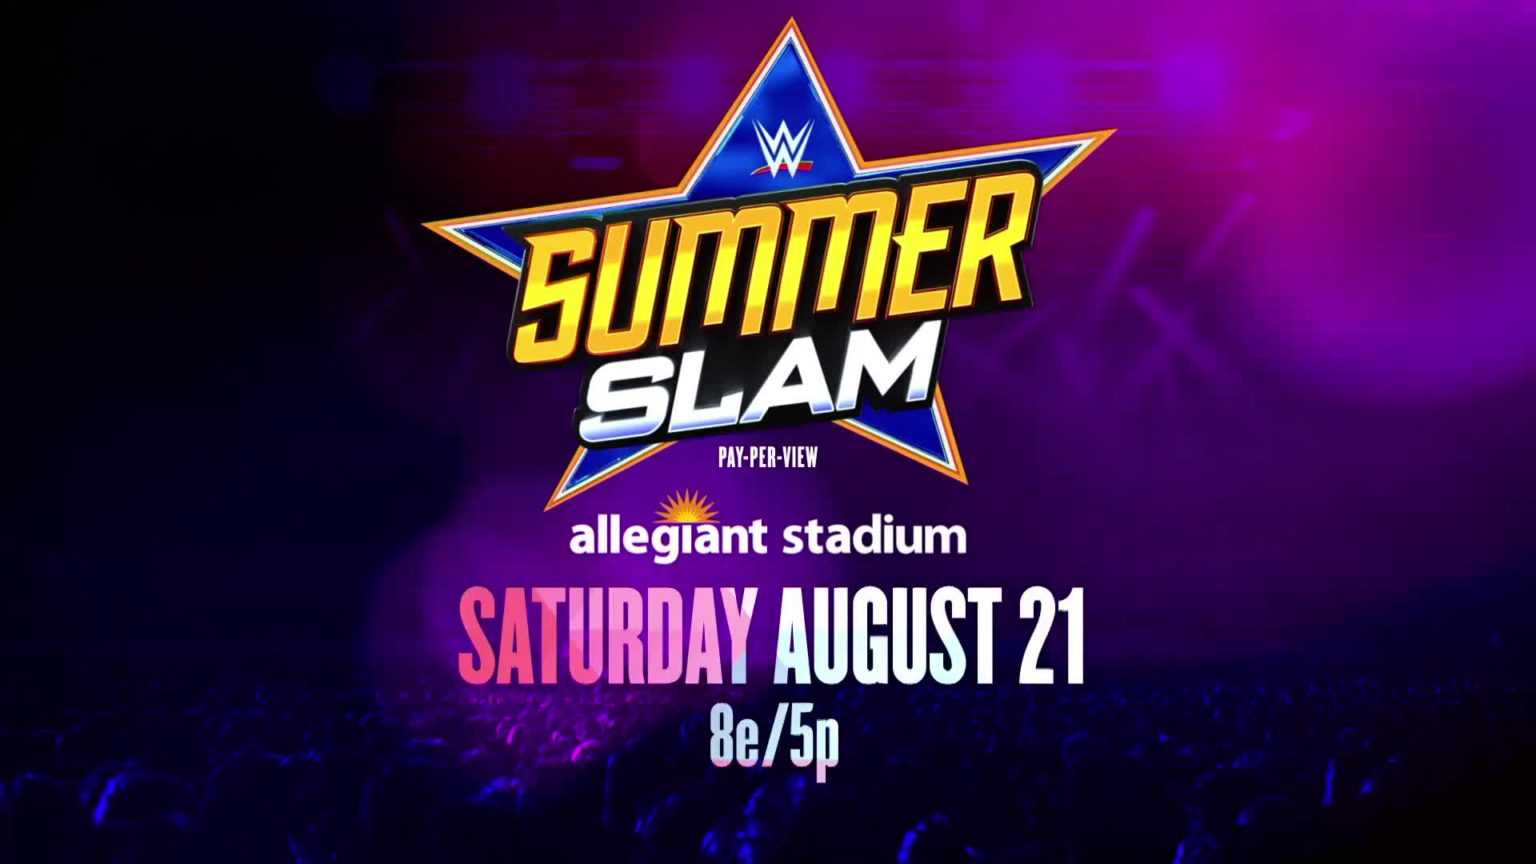 Top WWE SummerSlam Title Match In Jeopardy?